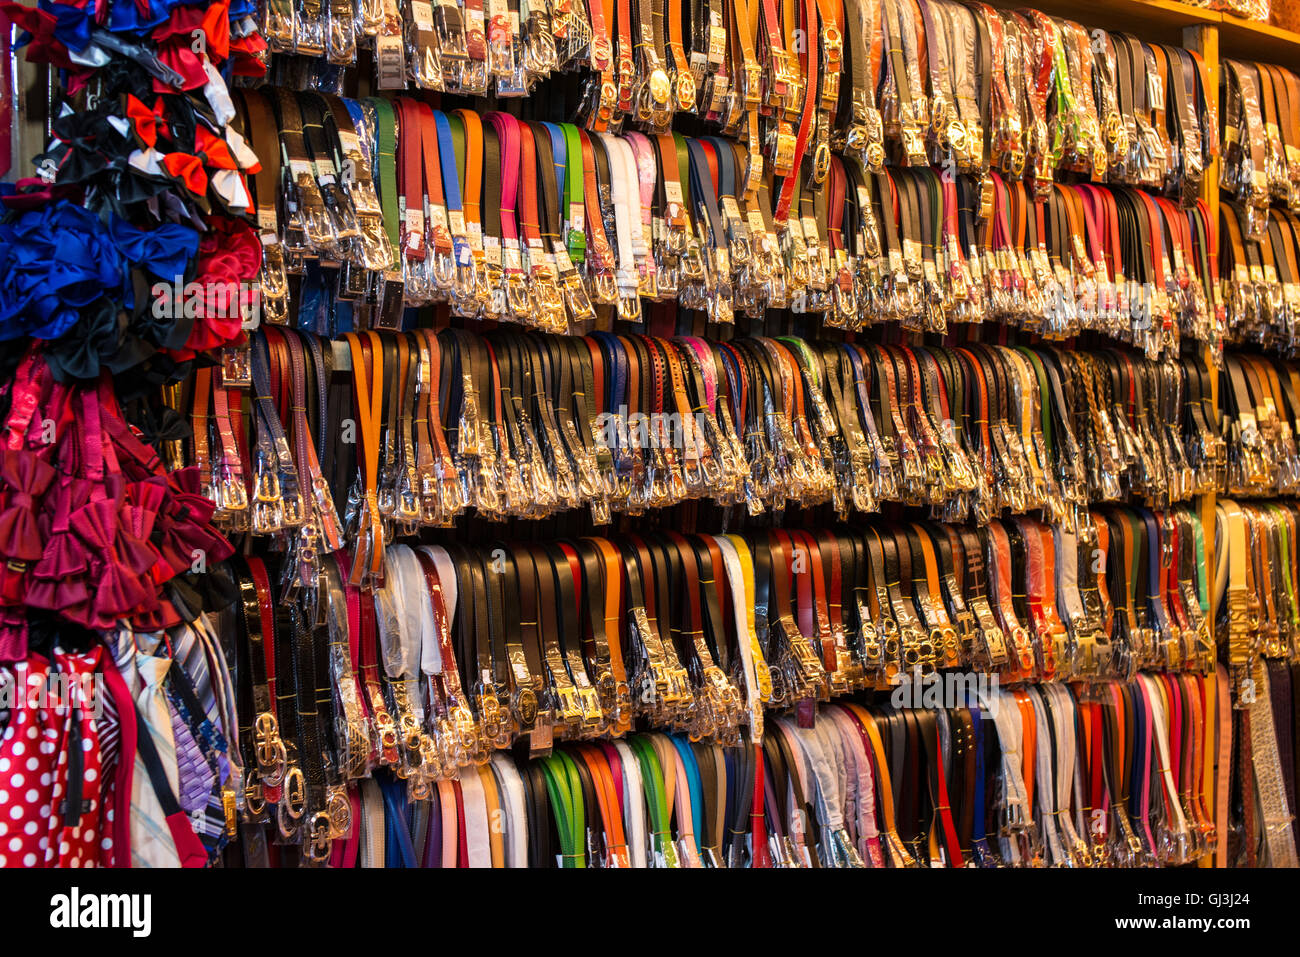 Racks of belts for sale, Hanoi Stock Photo